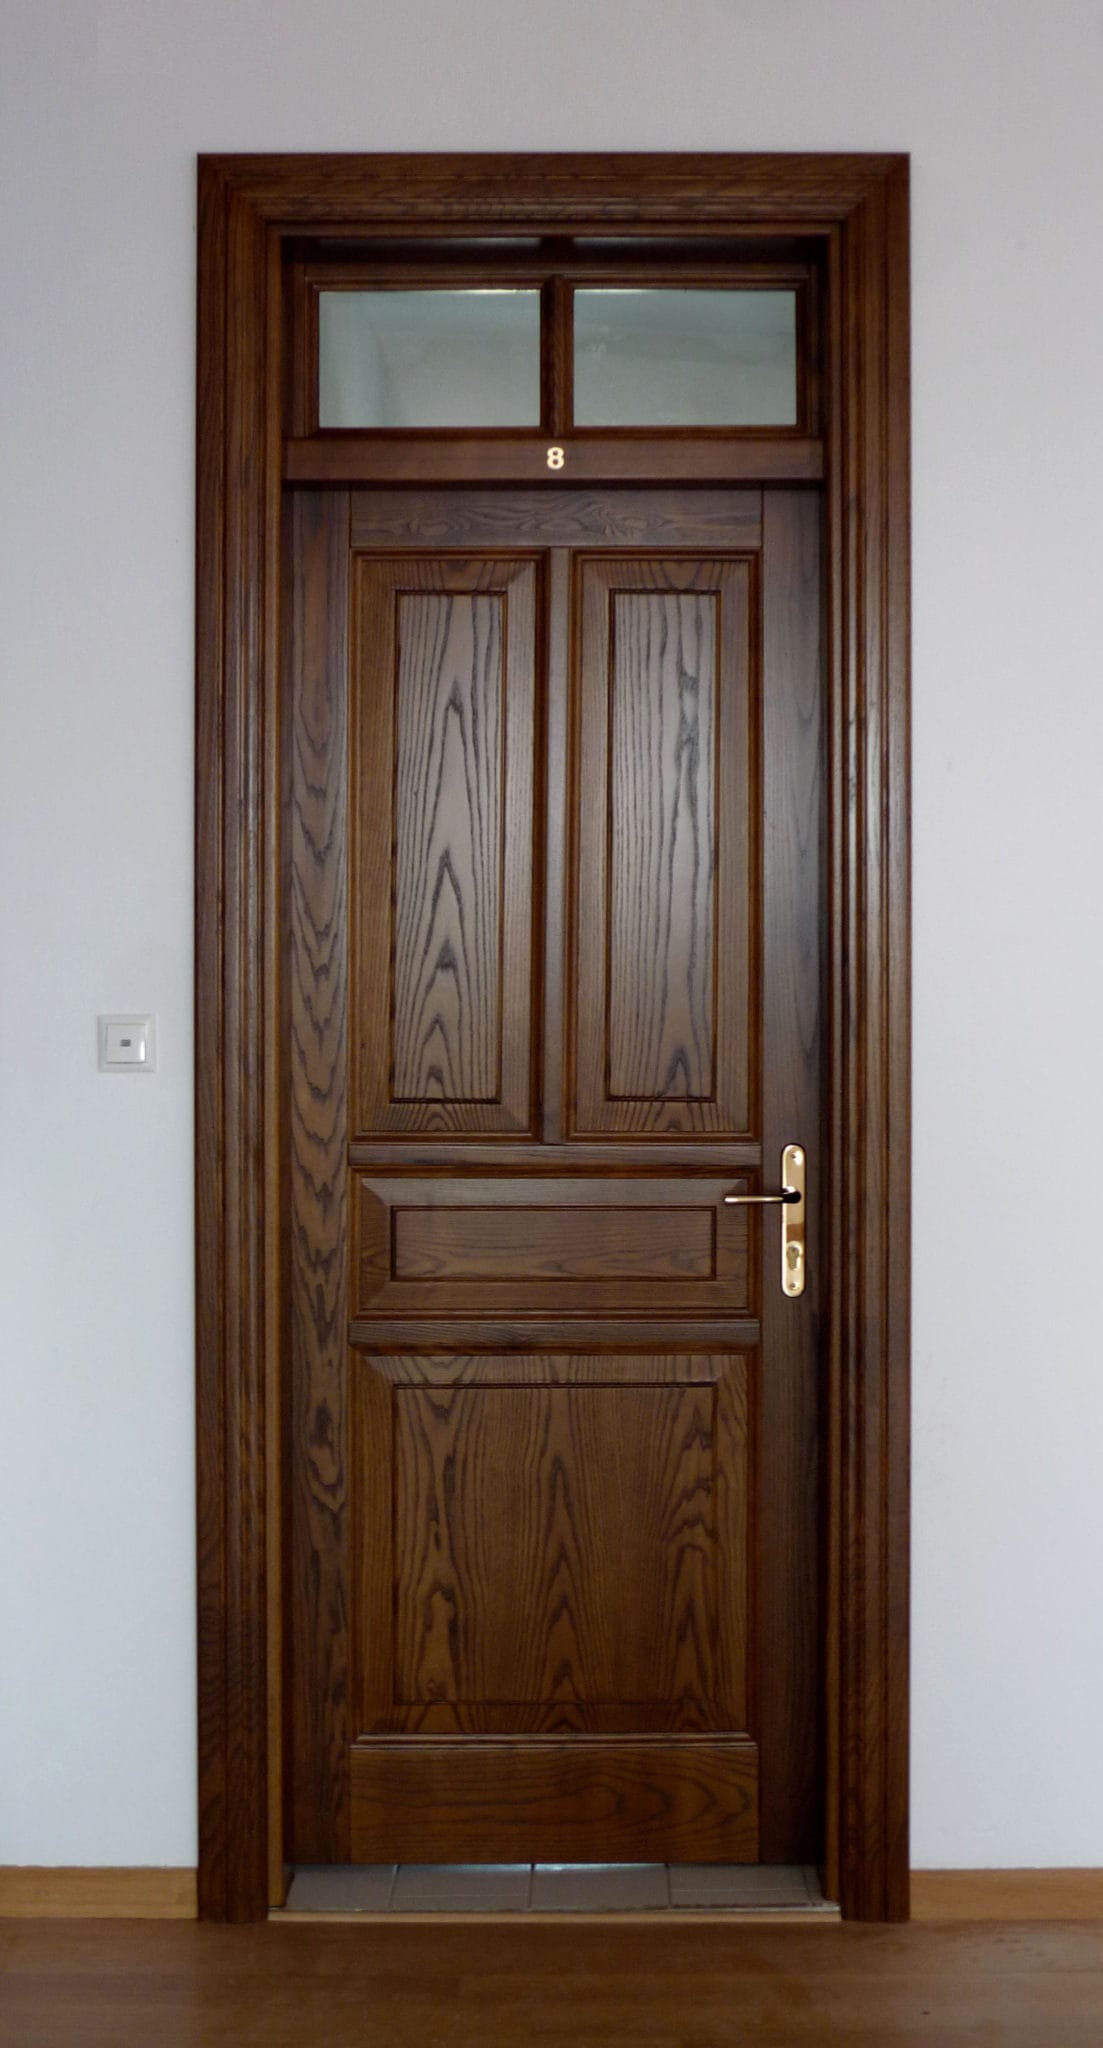 ξύλινη εσωτερική πόρτα με φεγγίτη εξαερισμού